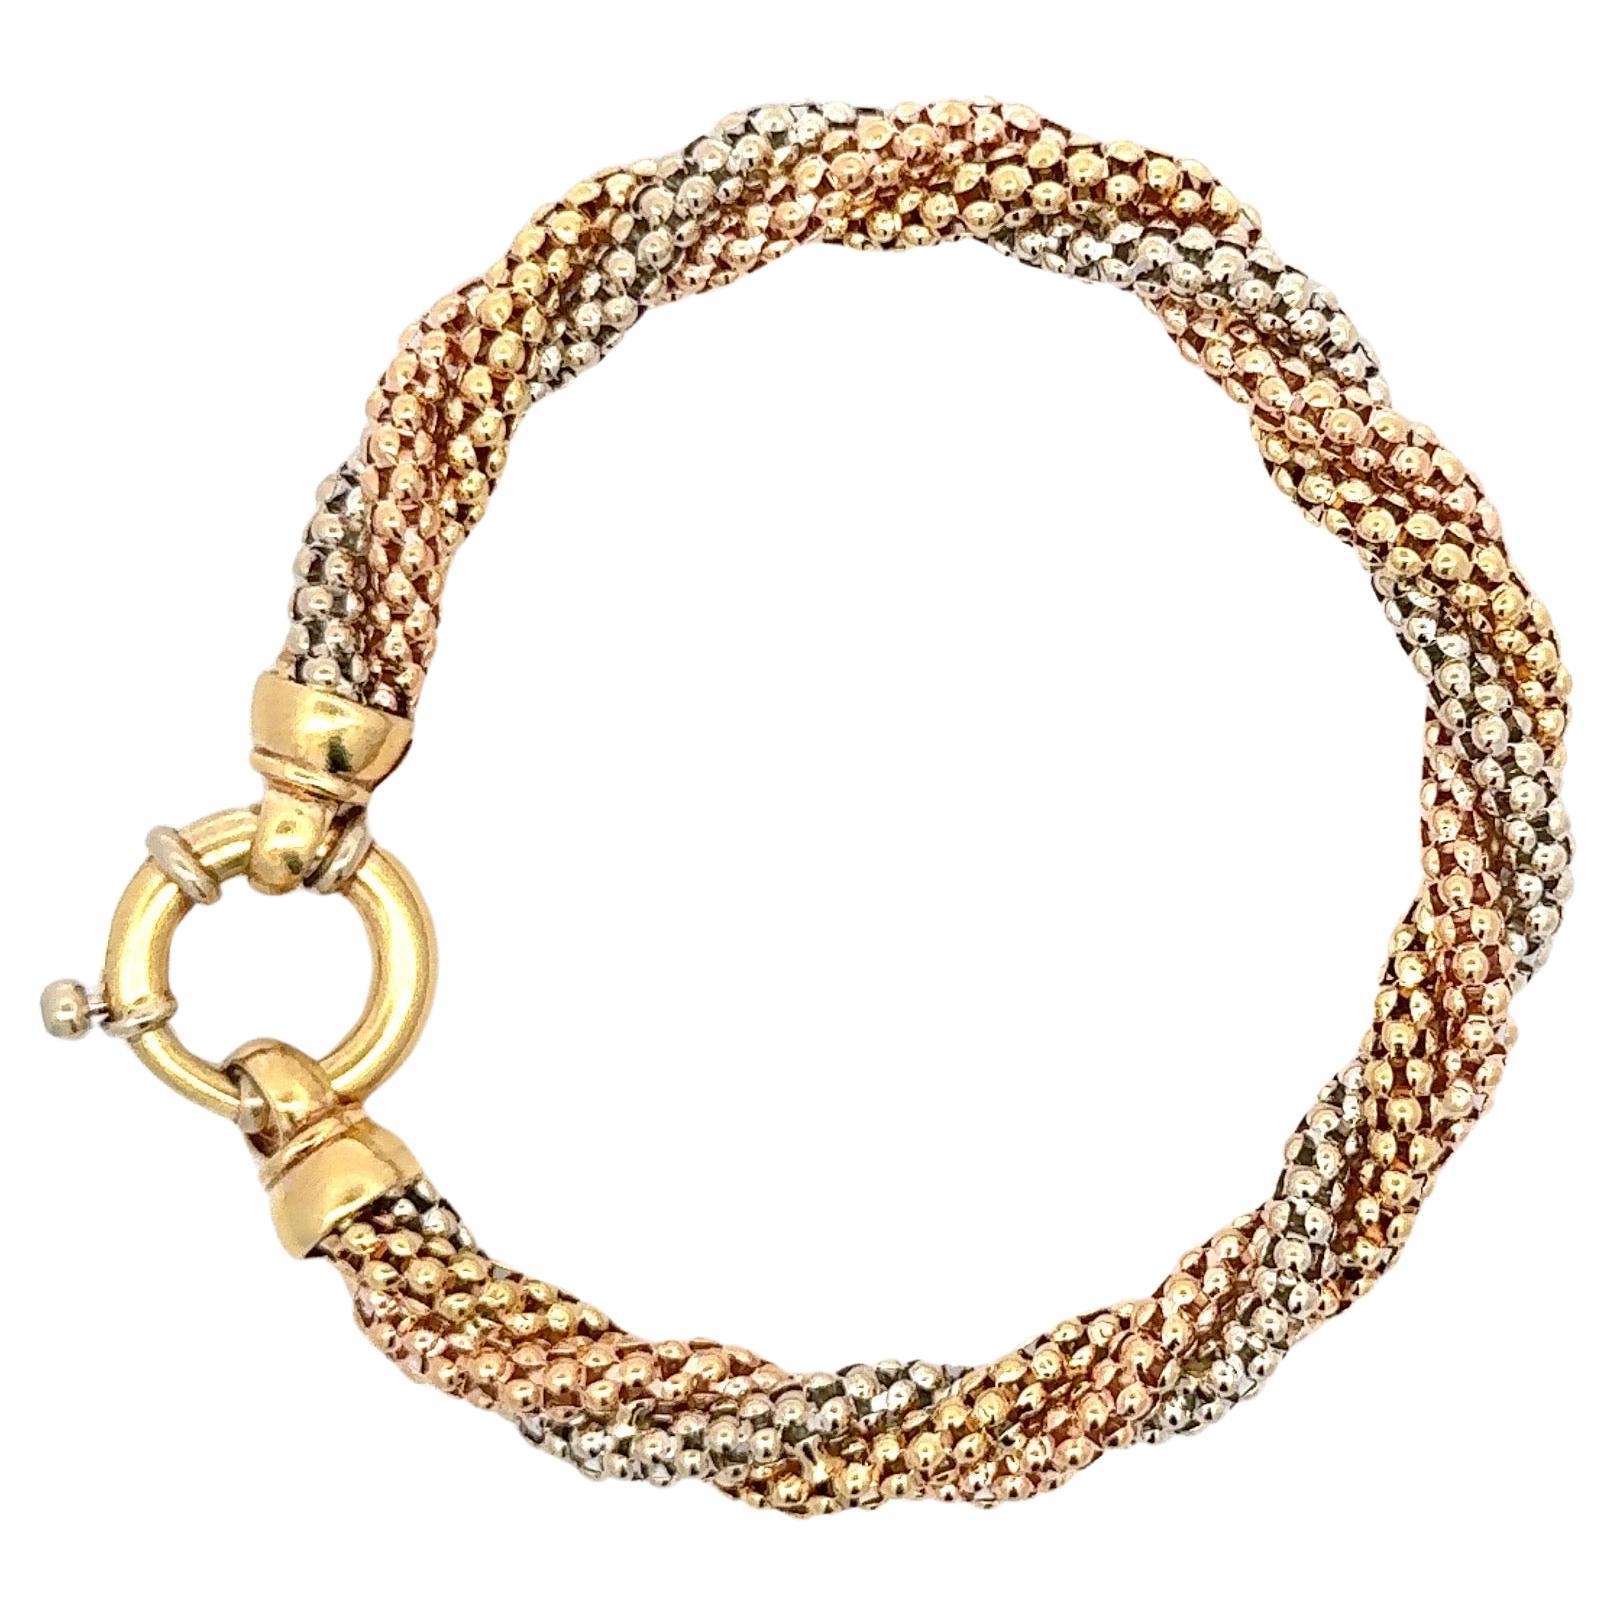 Bracelet en or 18 carats comprenant de l'or rose, blanc et jaune dans un motif de perles torsadées pesant 23 grammes.

